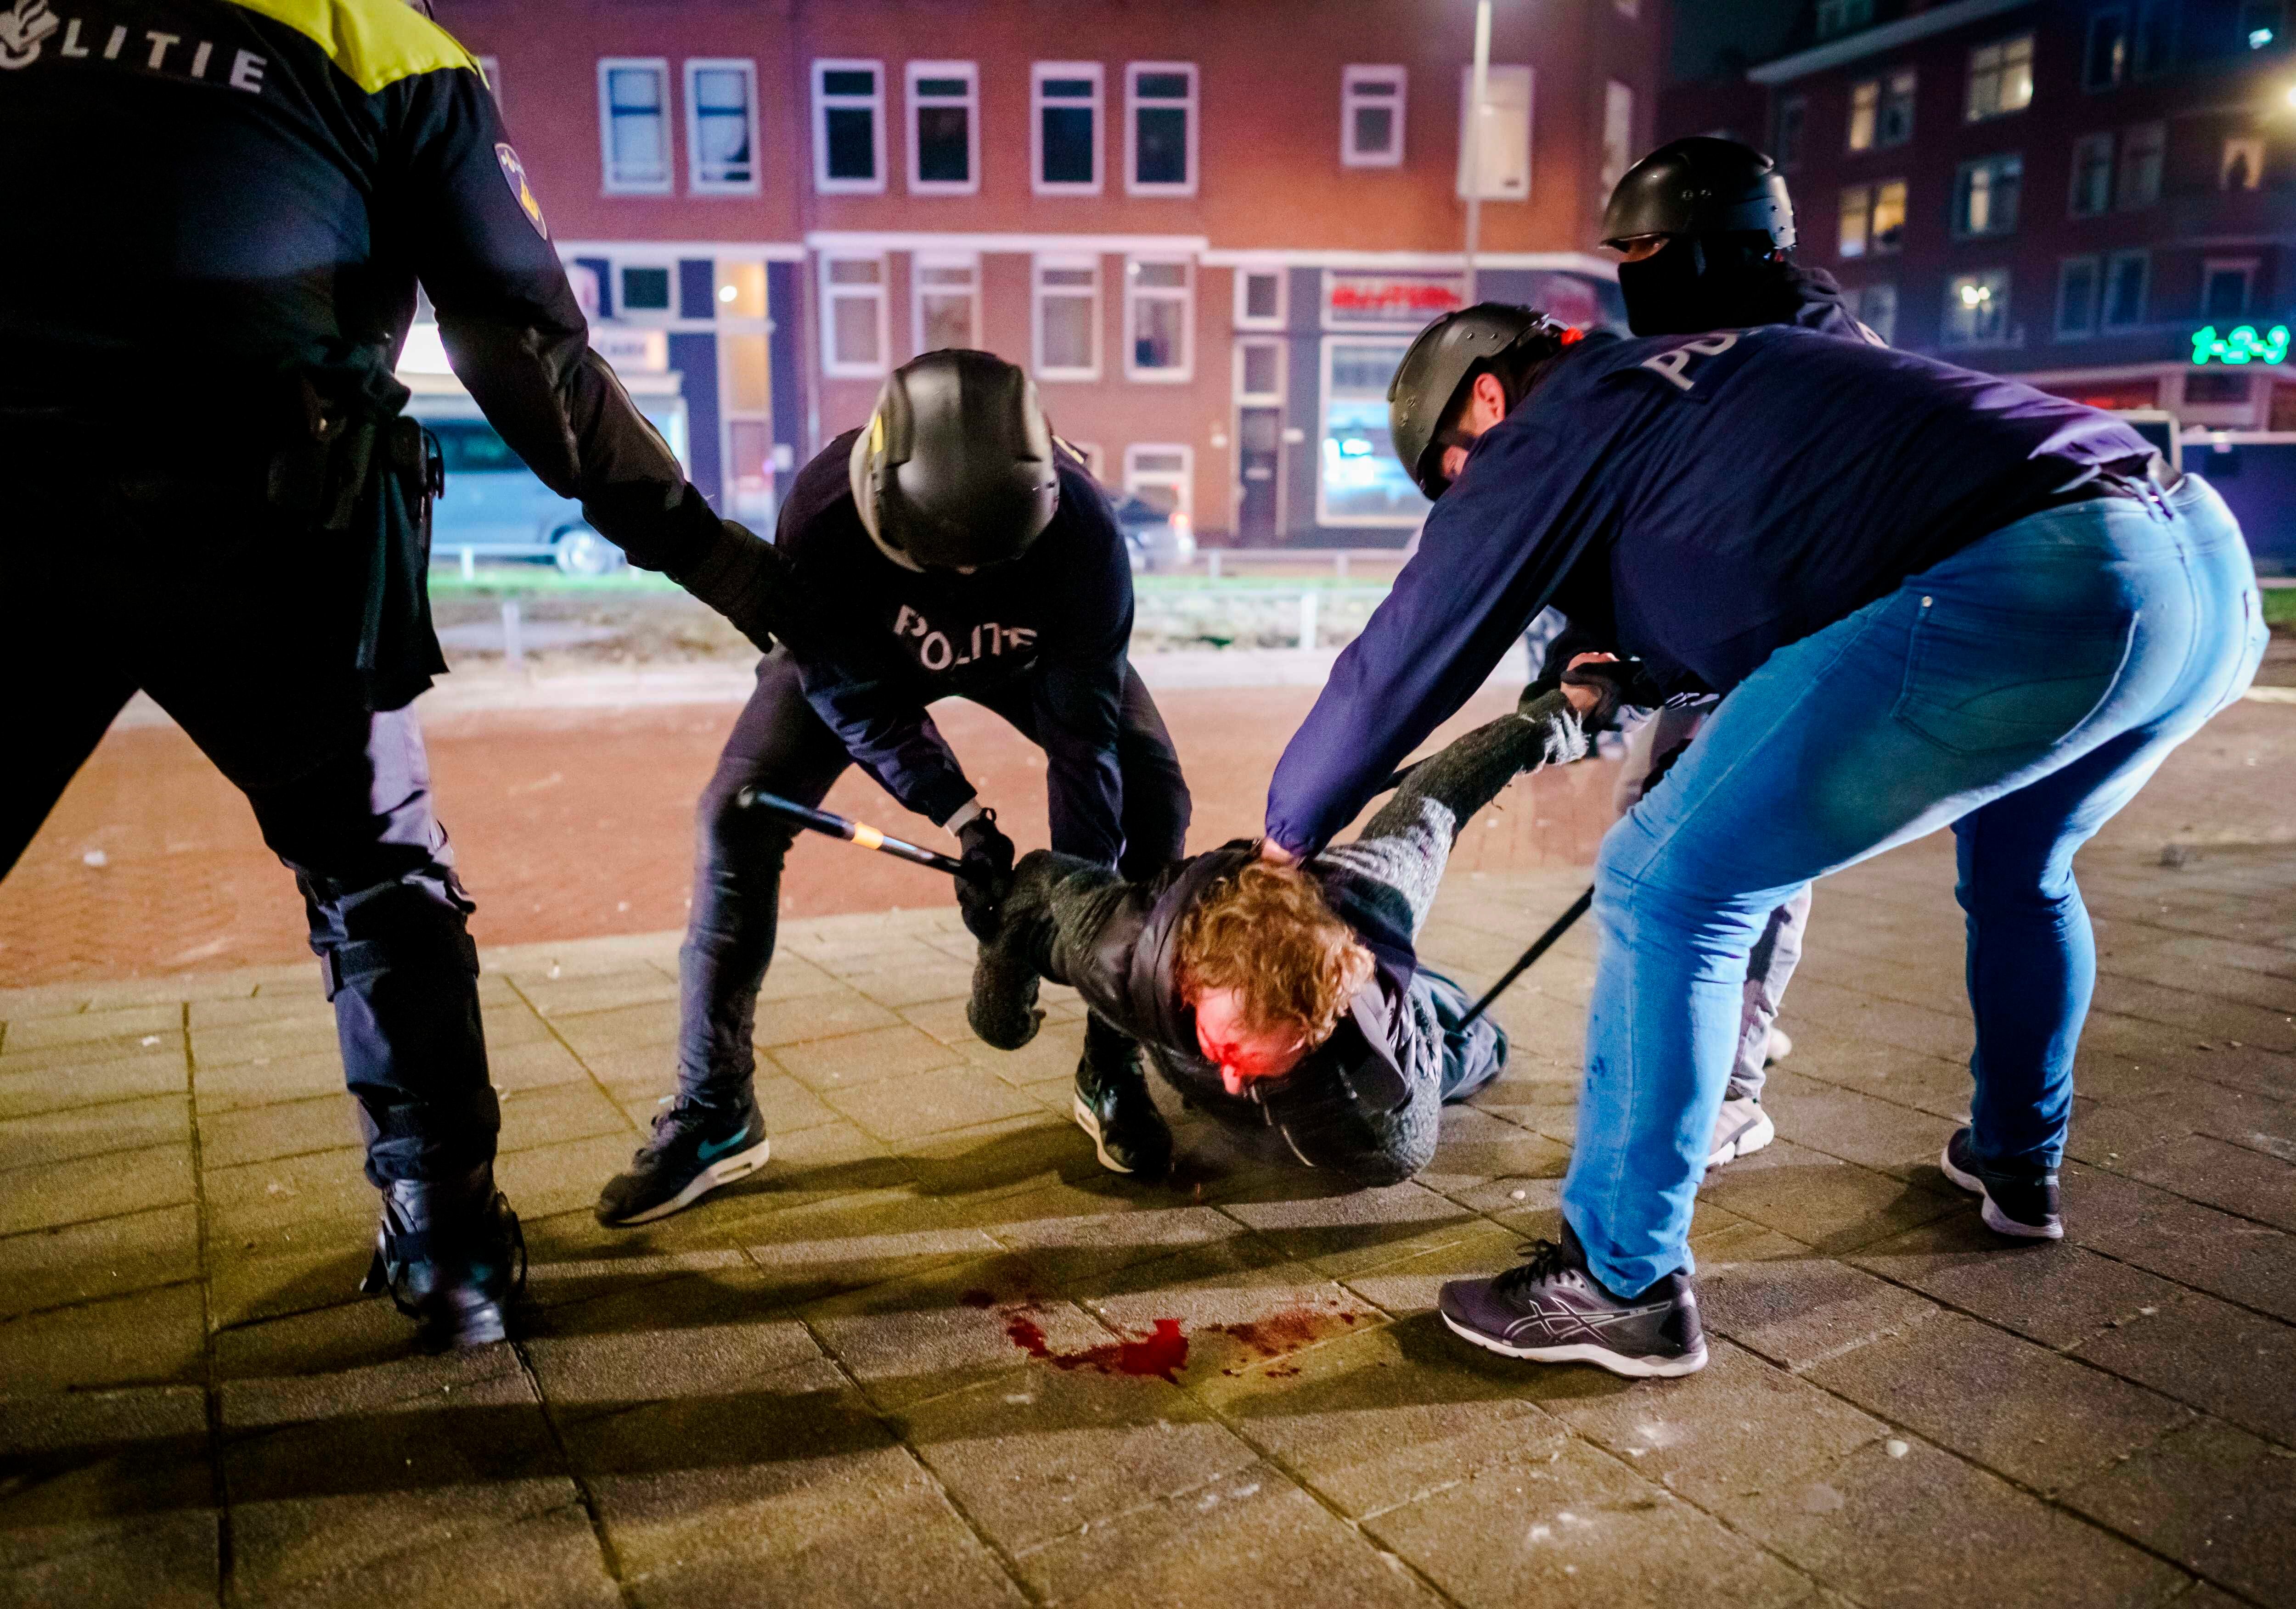 Un hombre es reducido por varios policías durante los distubios registrados anoche en Rotterdam, Países Bajos. EFE/EPA/MARCO DE SWART
